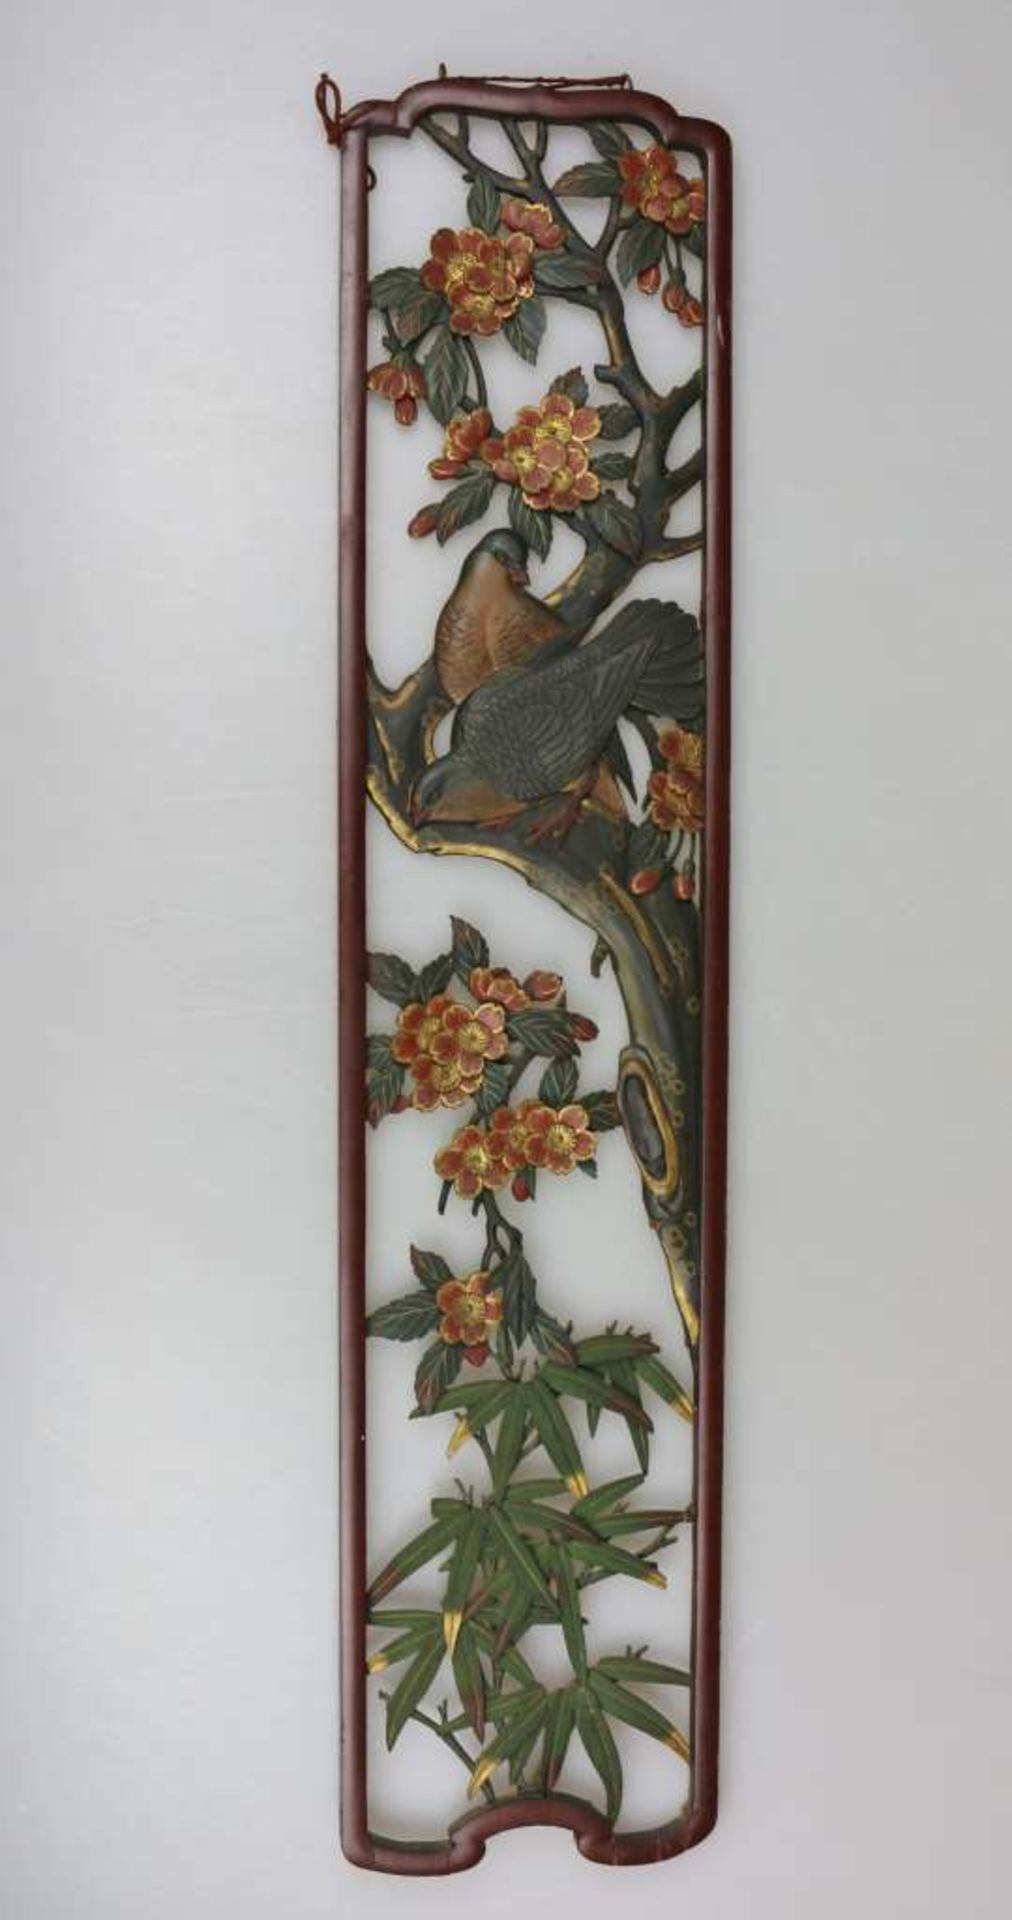 Hochrechteckiges Reliefbild, Asien, Holz, gefasst, Kirschblüten und Vogeldekor. H. 97 cm. Alters-